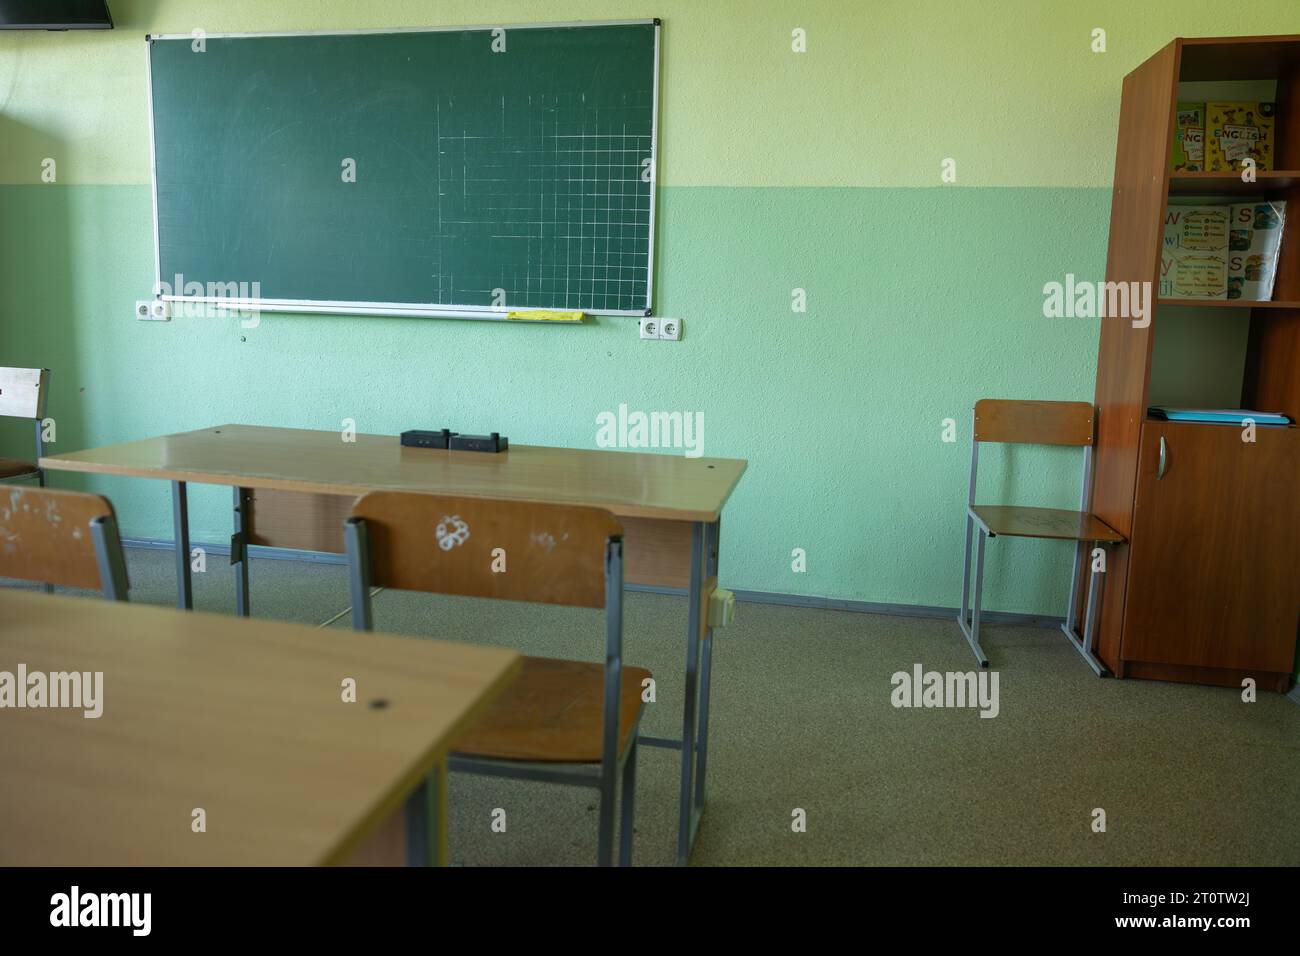 Salle de classe vide sans élèves dans des chaises et des bureaux d'école, conseil en Ukraine. Salle de classe à l'ancienne Banque D'Images